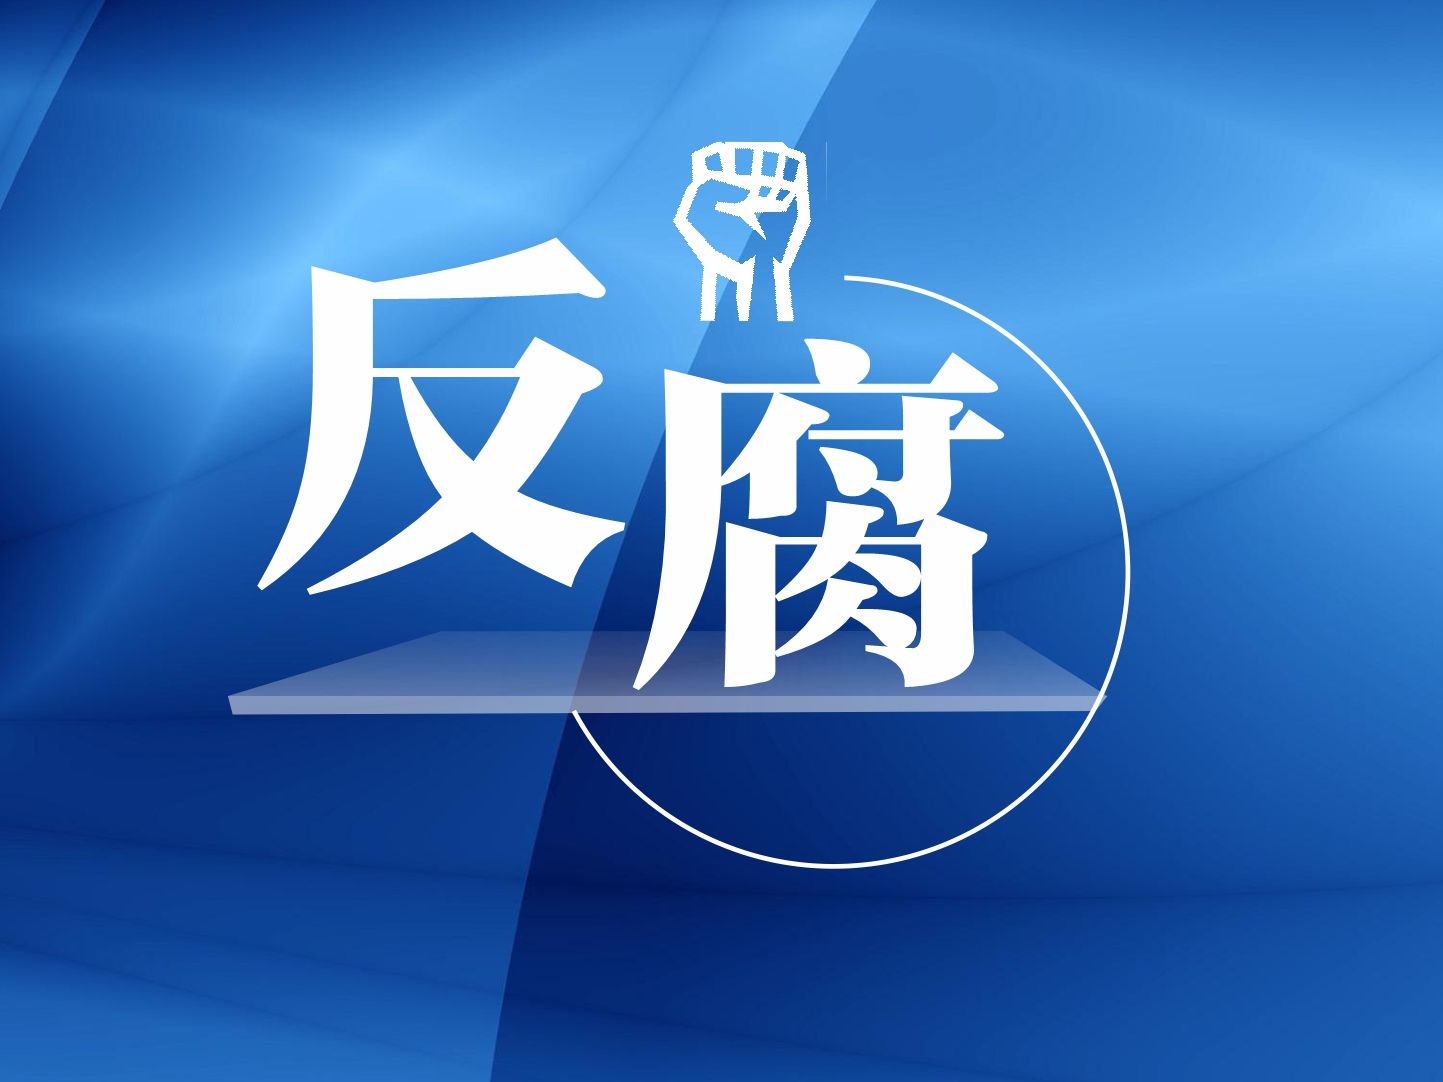 肇庆市原市委常委、副市长李奔接受纪律审查和监察调查 